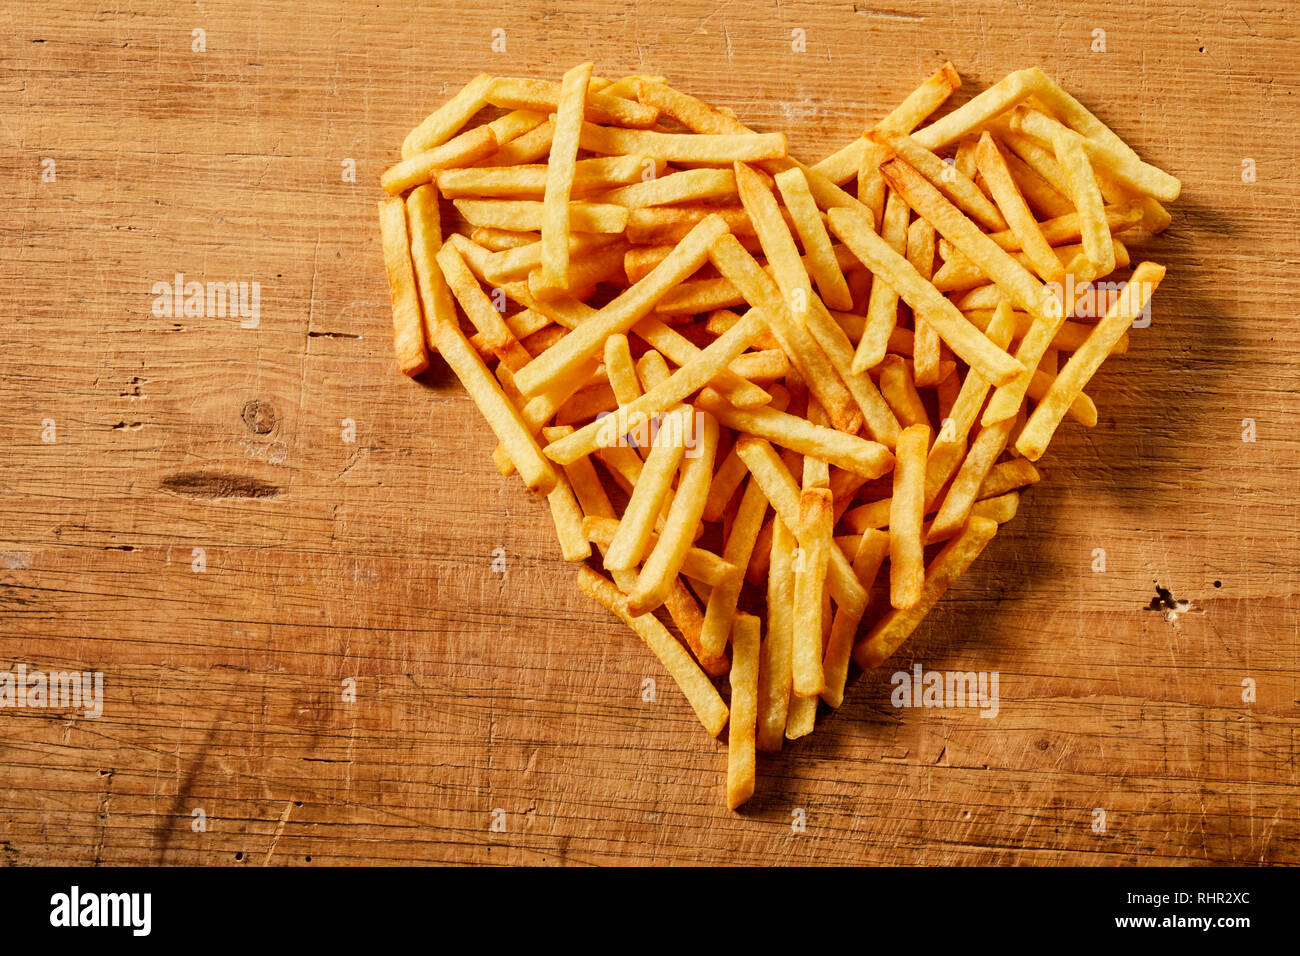 Vista desde arriba de una forma corazón hecho de sabrosas papas fritas servidas en una mesa de estilo rústico de madera como concepto de amor o comida rápida Foto de stock